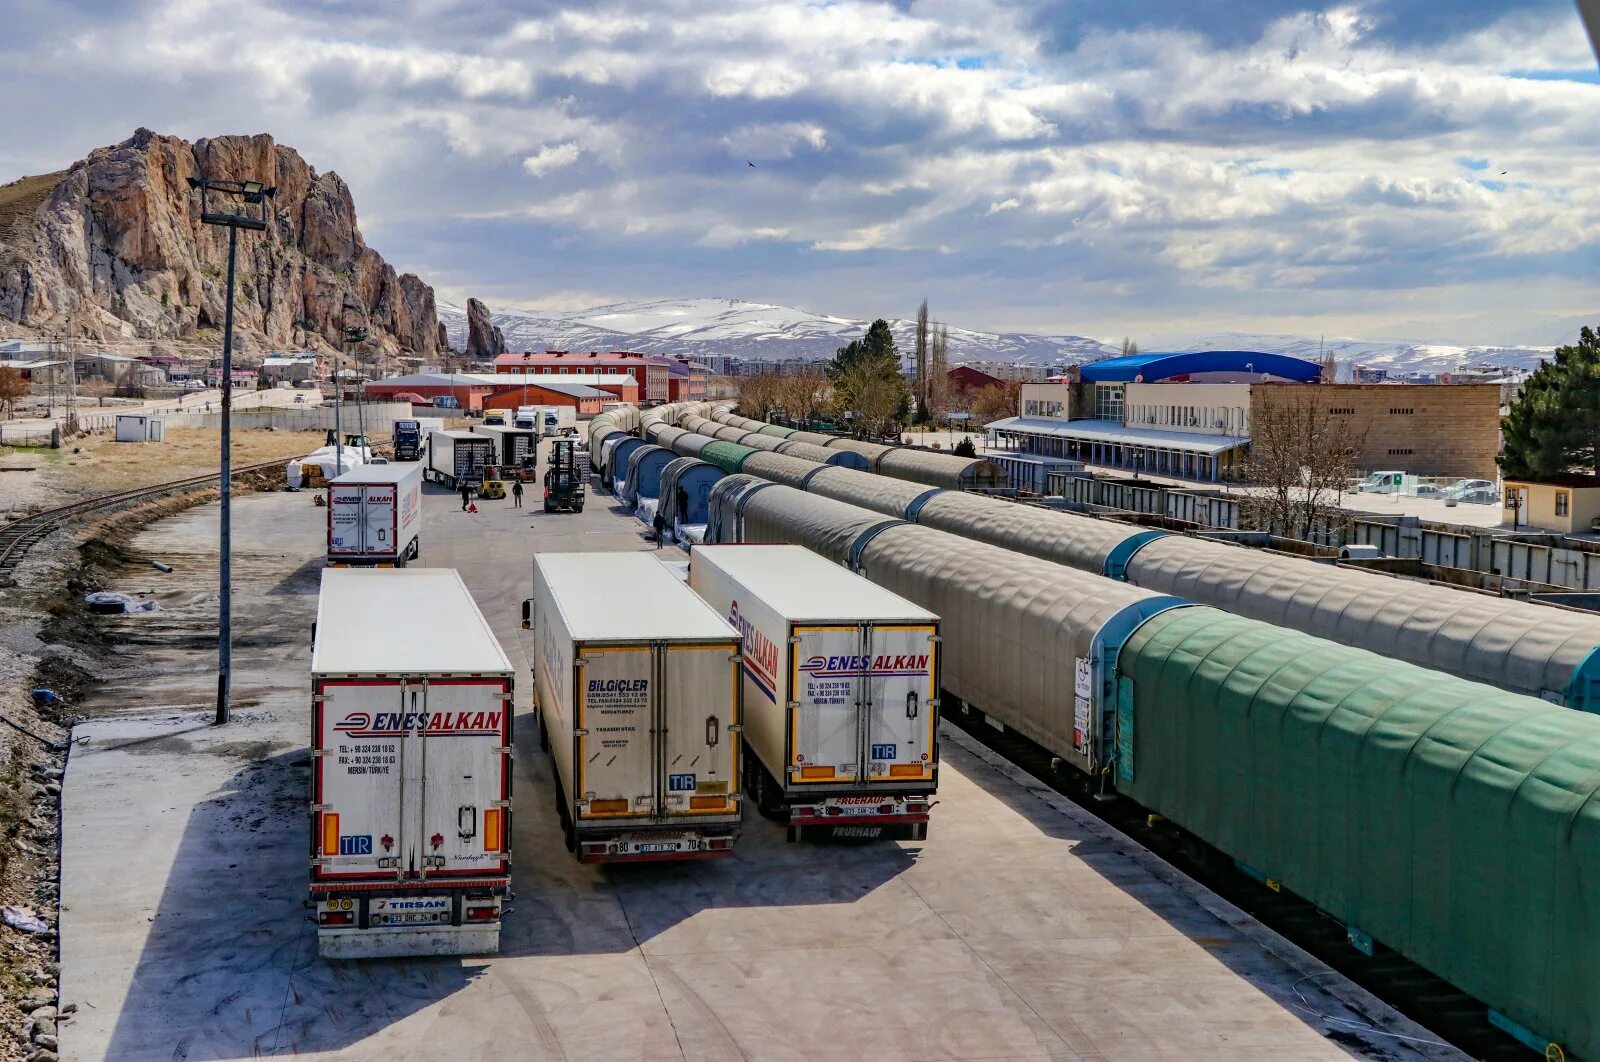 Дела грузовые. Станция Астара Иран. Транспорт в Иране. Транспортная инфраструктура Ирана. Грузовой поезд.